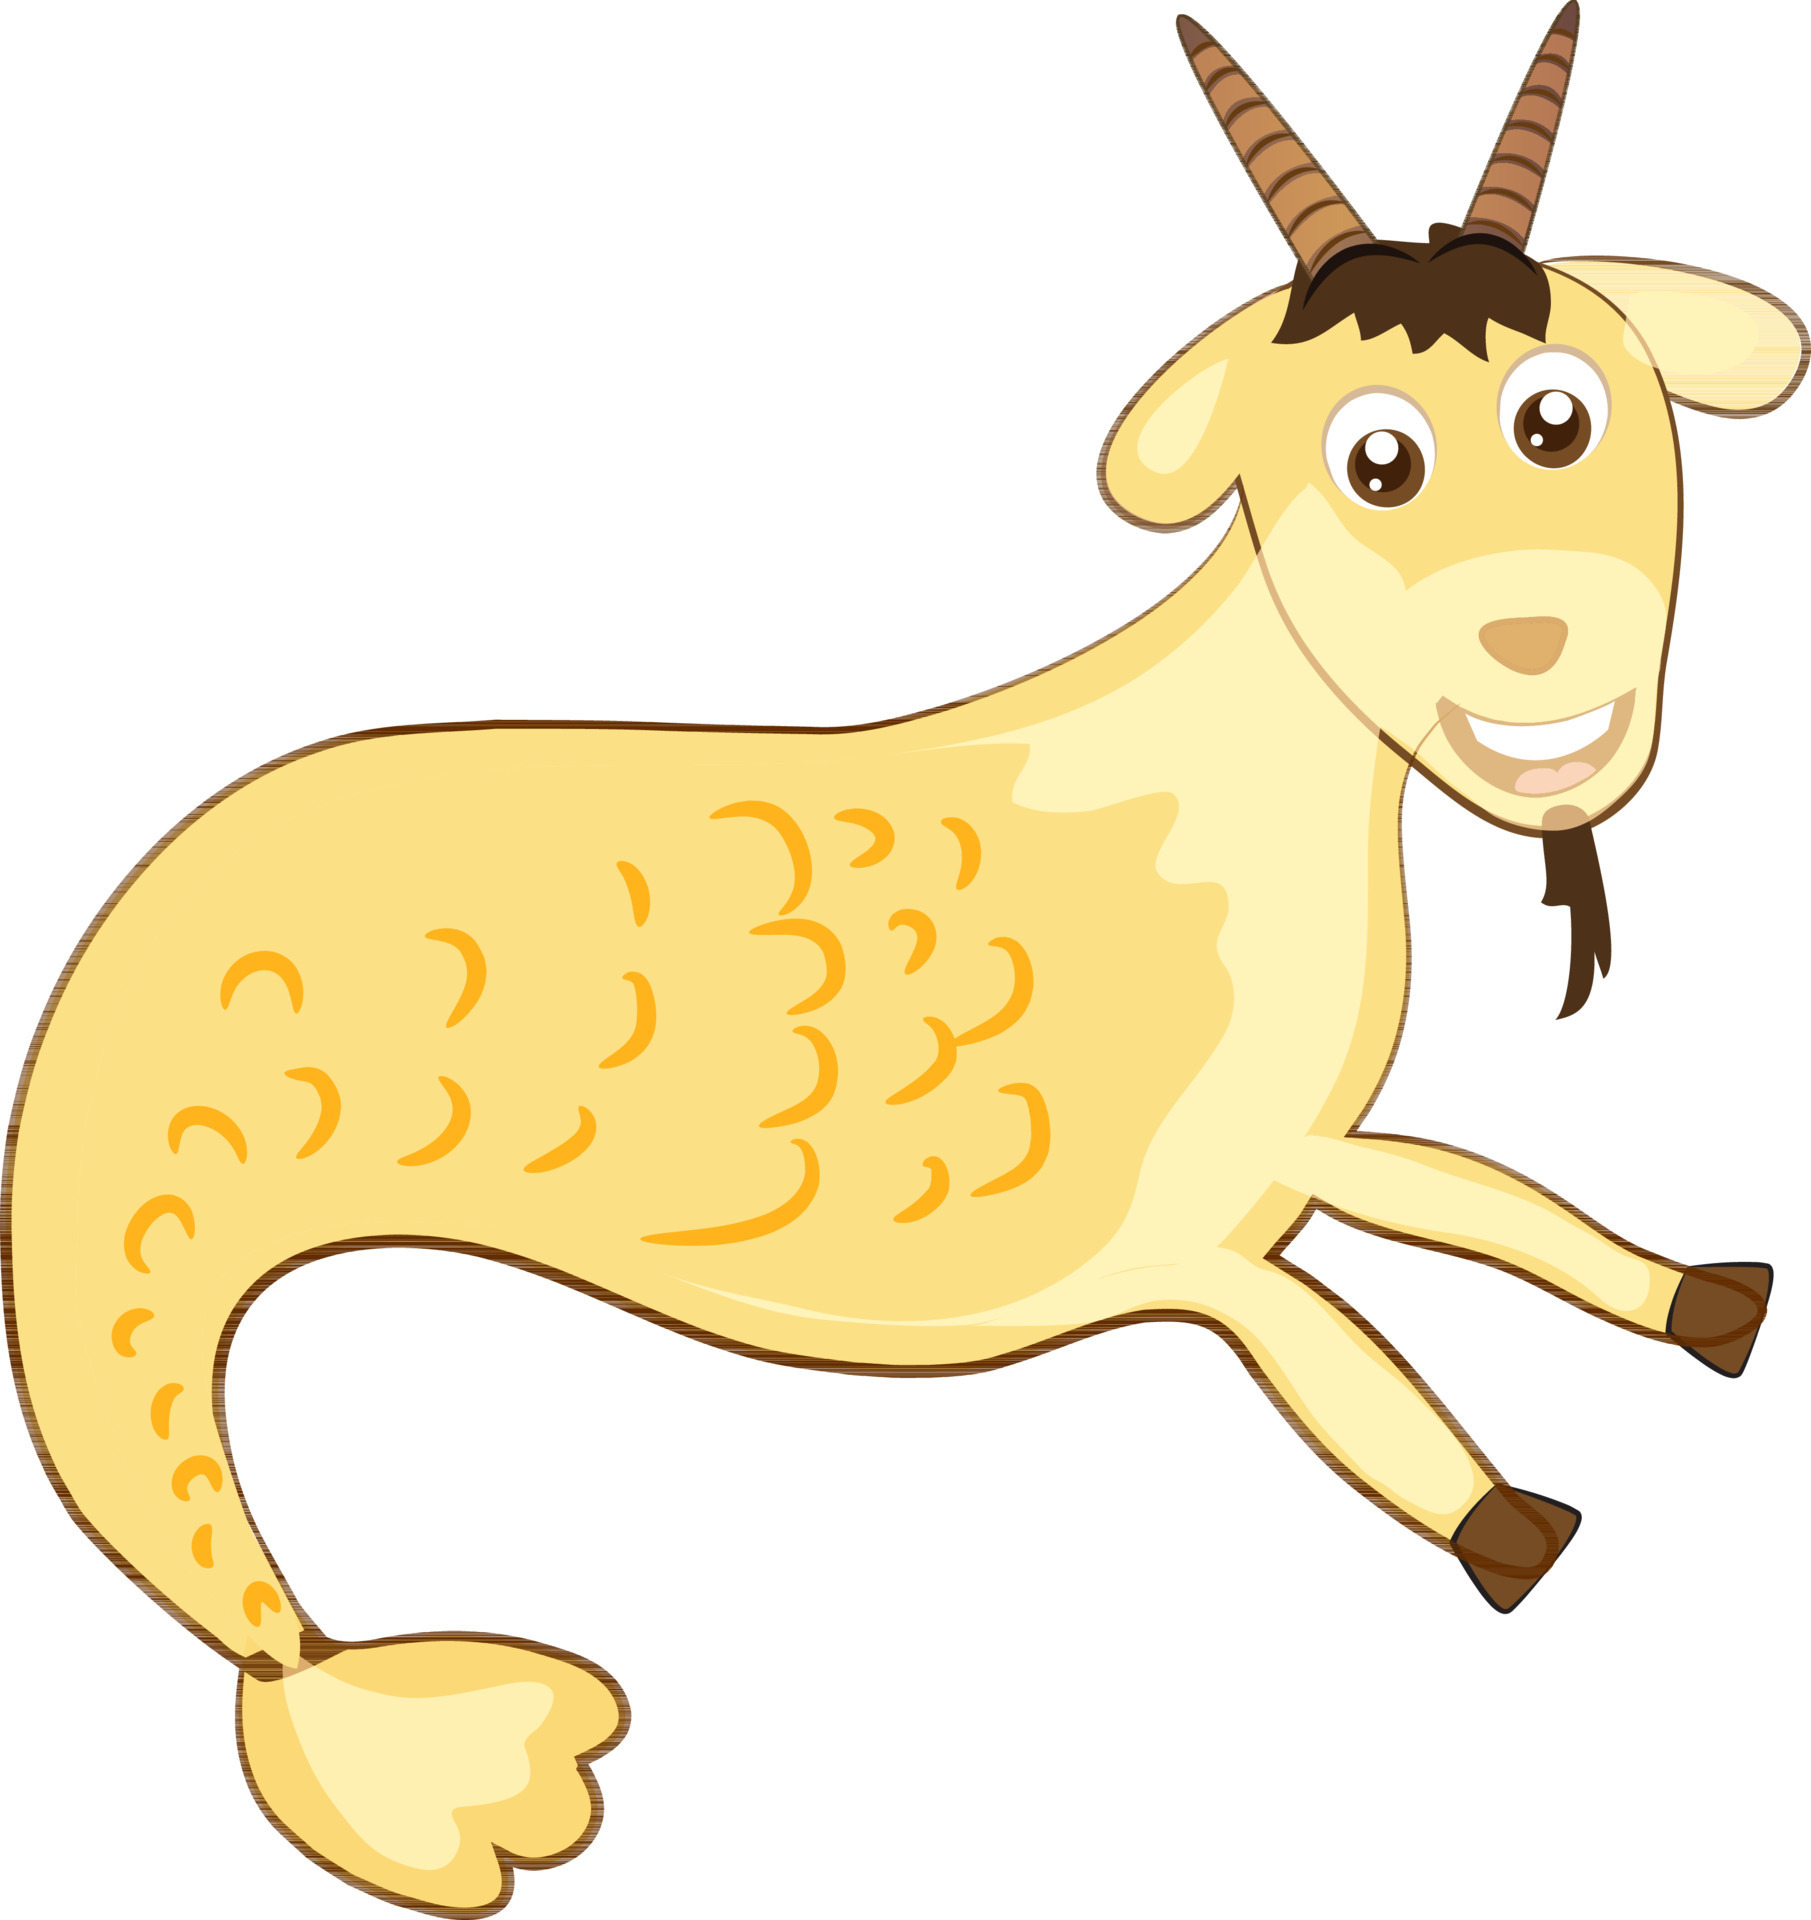 Zodiac sign in capricorn in fantastic animation for animal. 24380274 ...